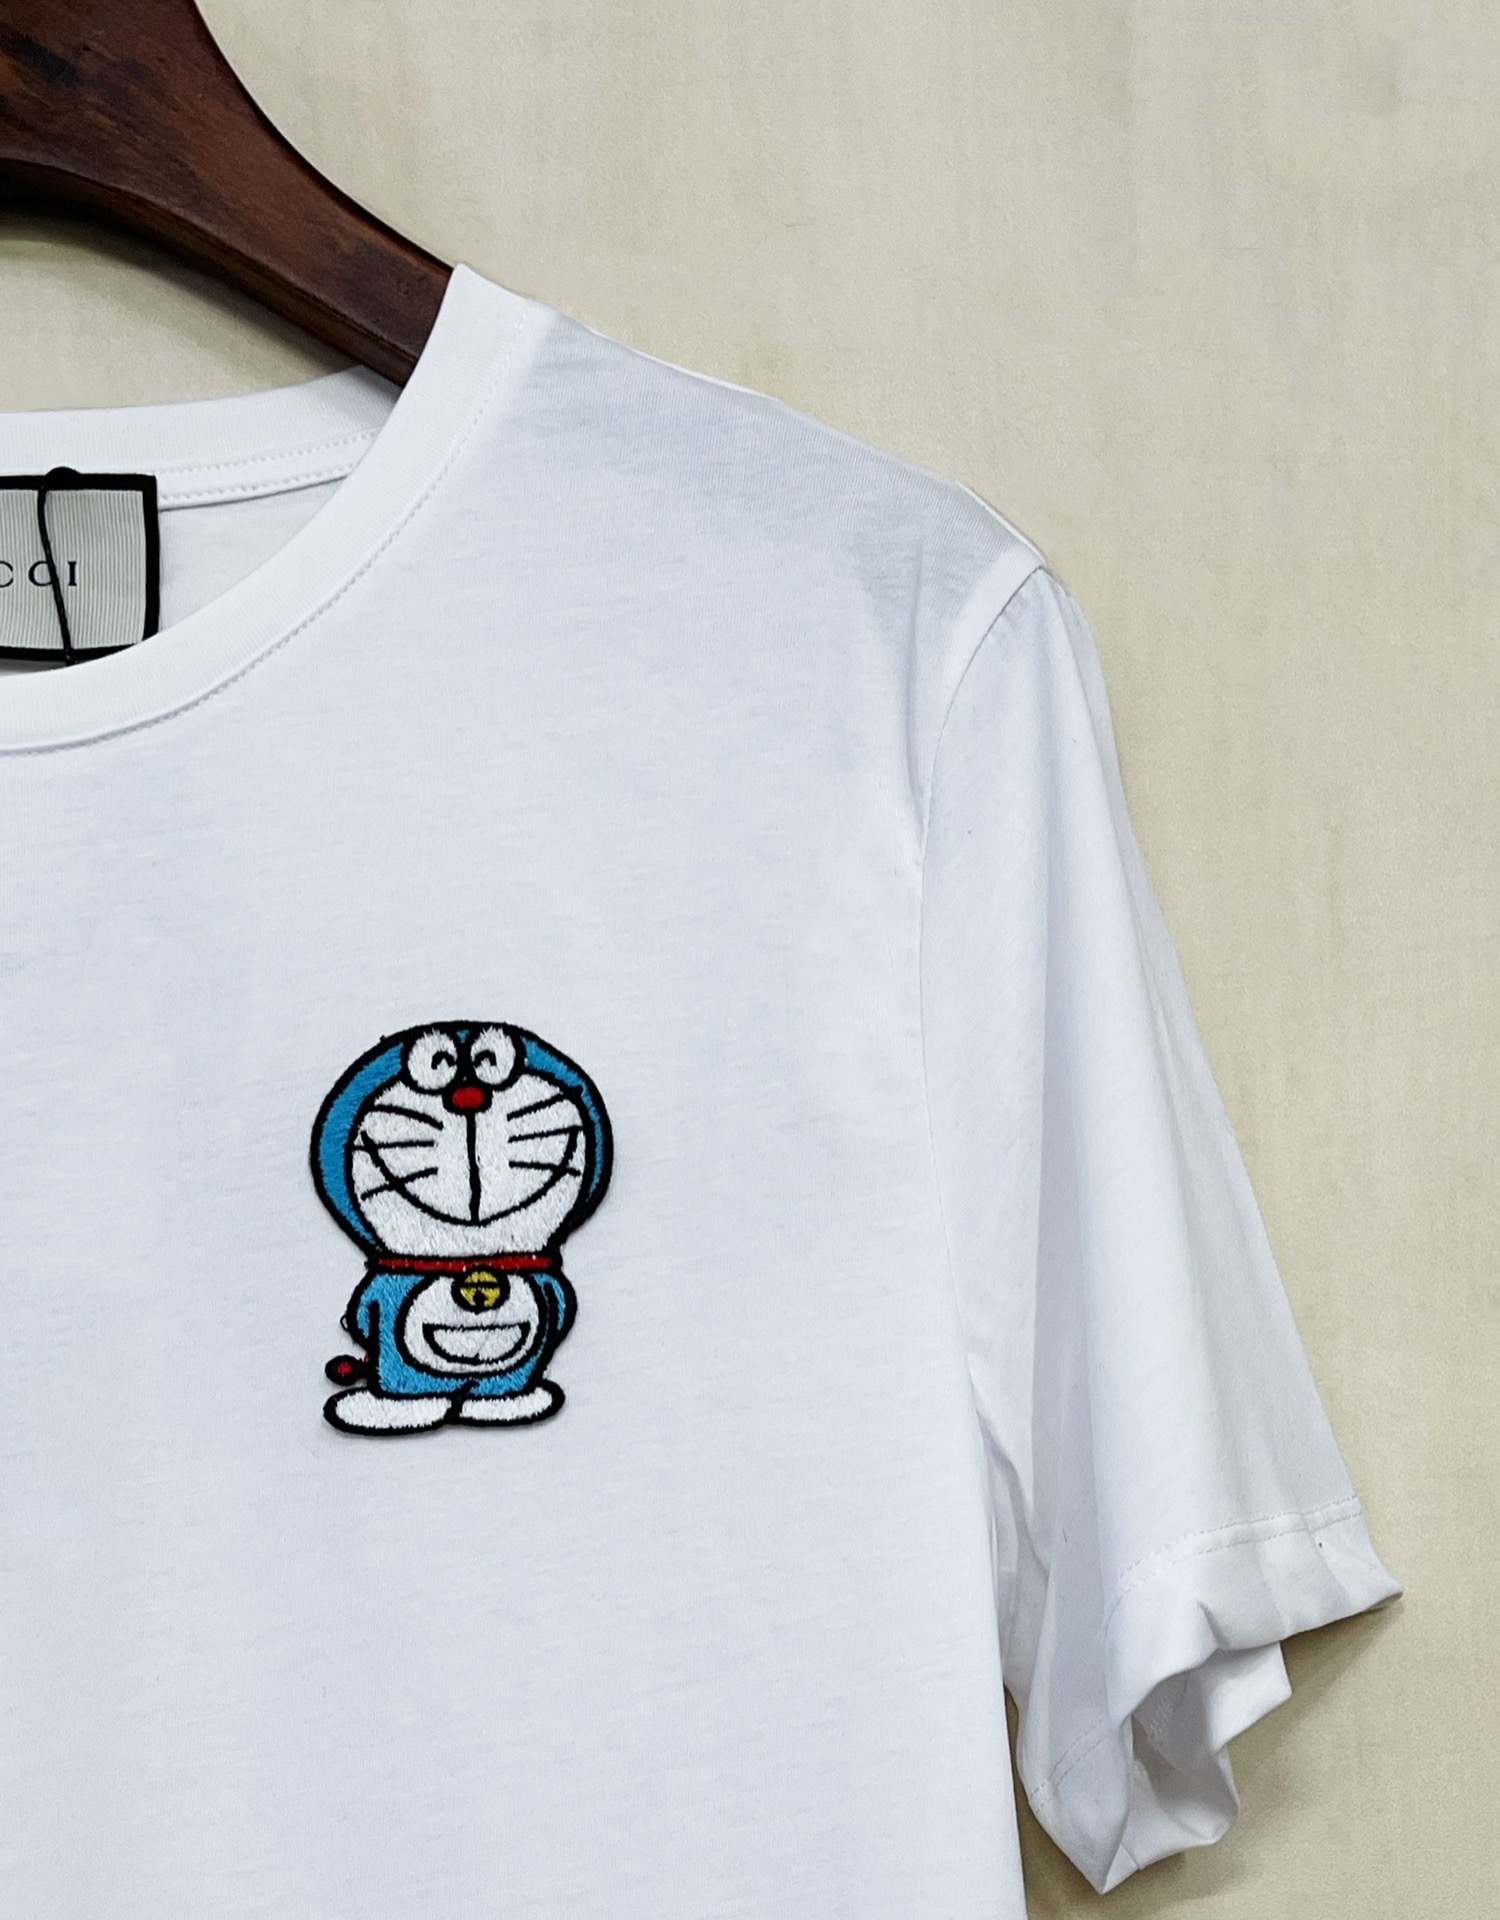 Áo Thun Tay Ngắn Cổ Tròn Thêu Hình Doraemon Dễ Thương Thời Trang Xuân Hè 2021